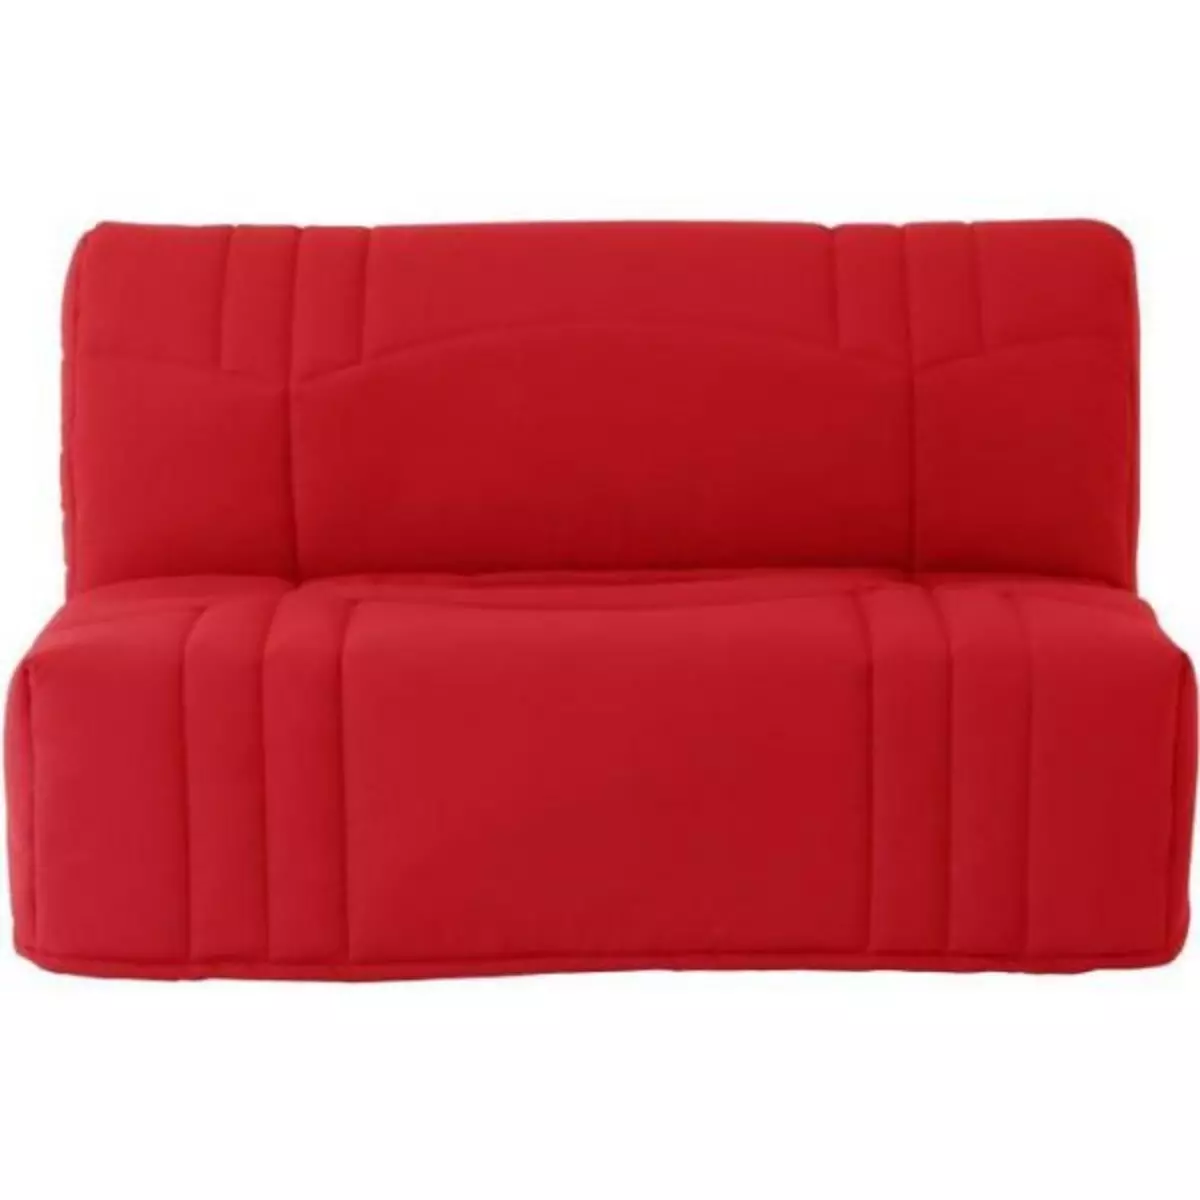 MARKET24 Banquette BZ DREAM - Tissu 100% Coton rouge - Couchage 140x190 cm - Classique - Moelleux